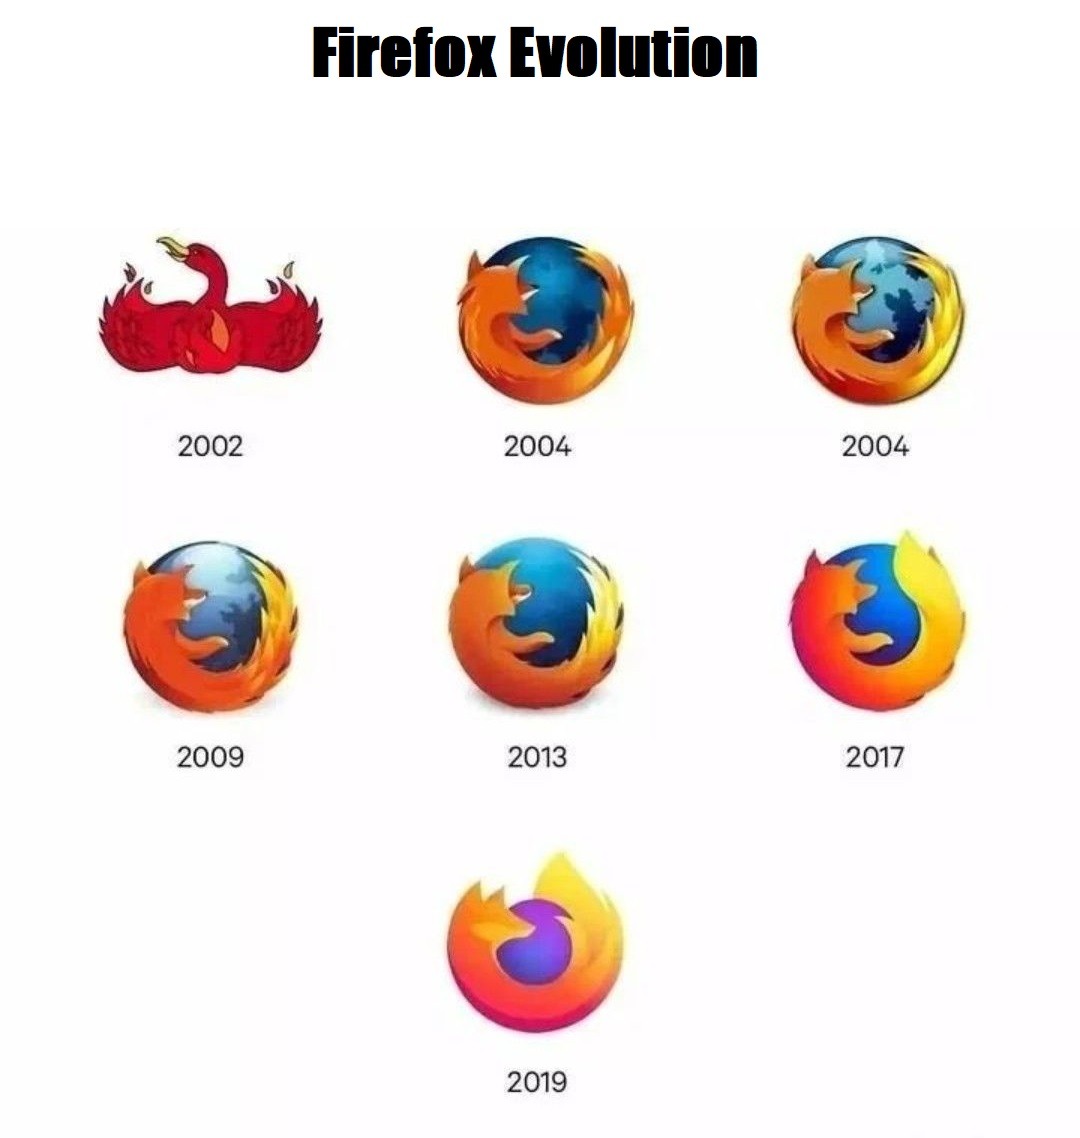 Firefox Evolution - meme